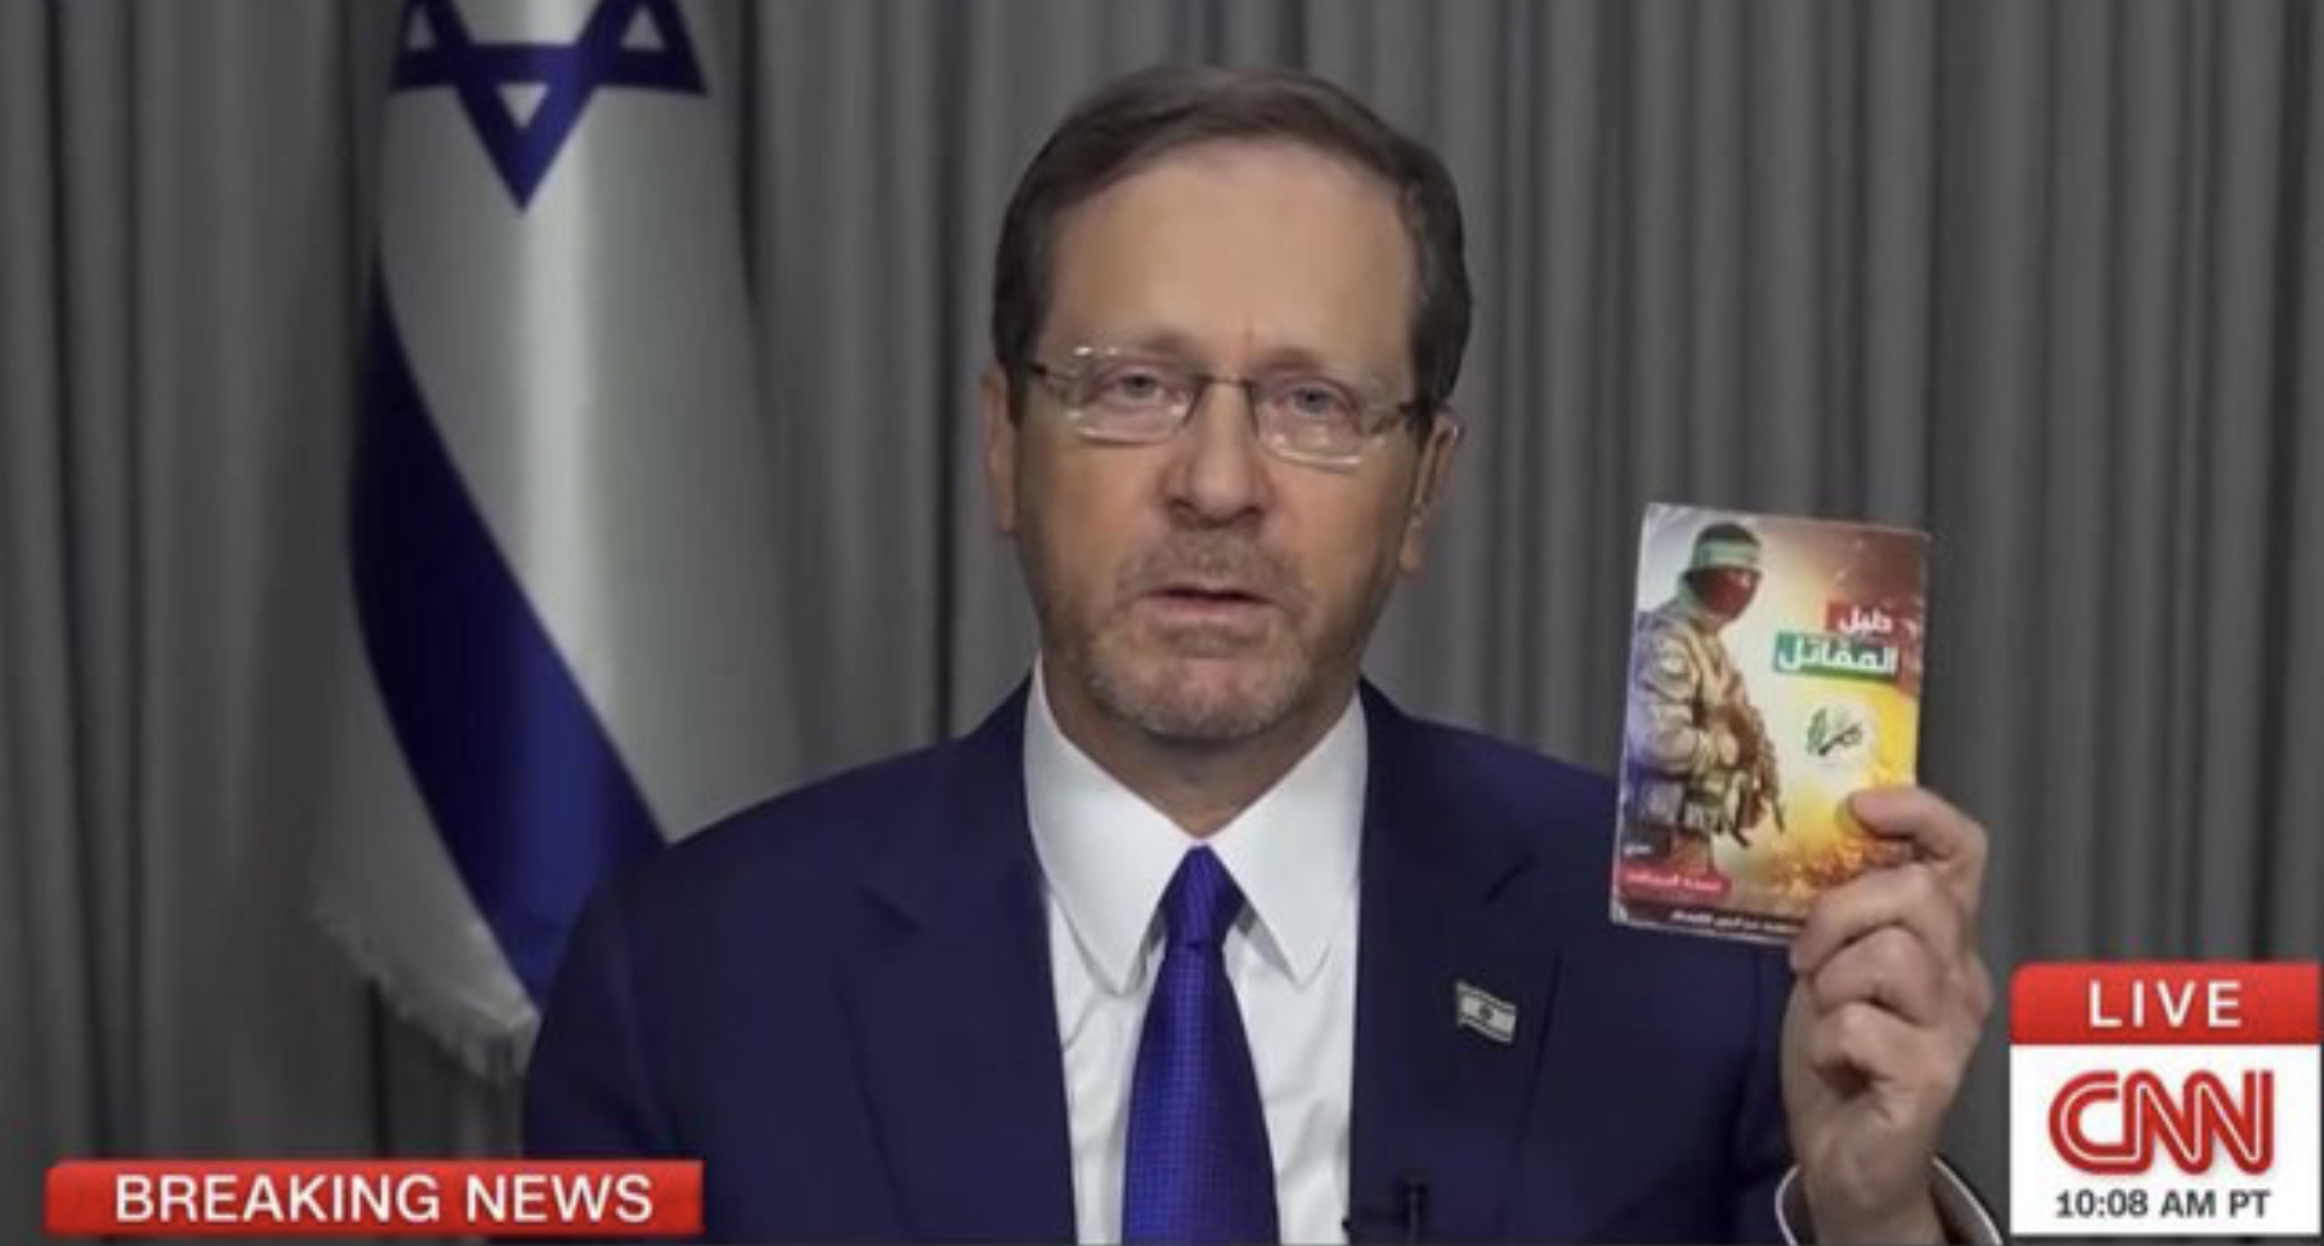 Il presidente Herzog condivide il "piano di rapimento di ostaggi" di Hamas che descrive nei dettagli il piano del gruppo terroristico